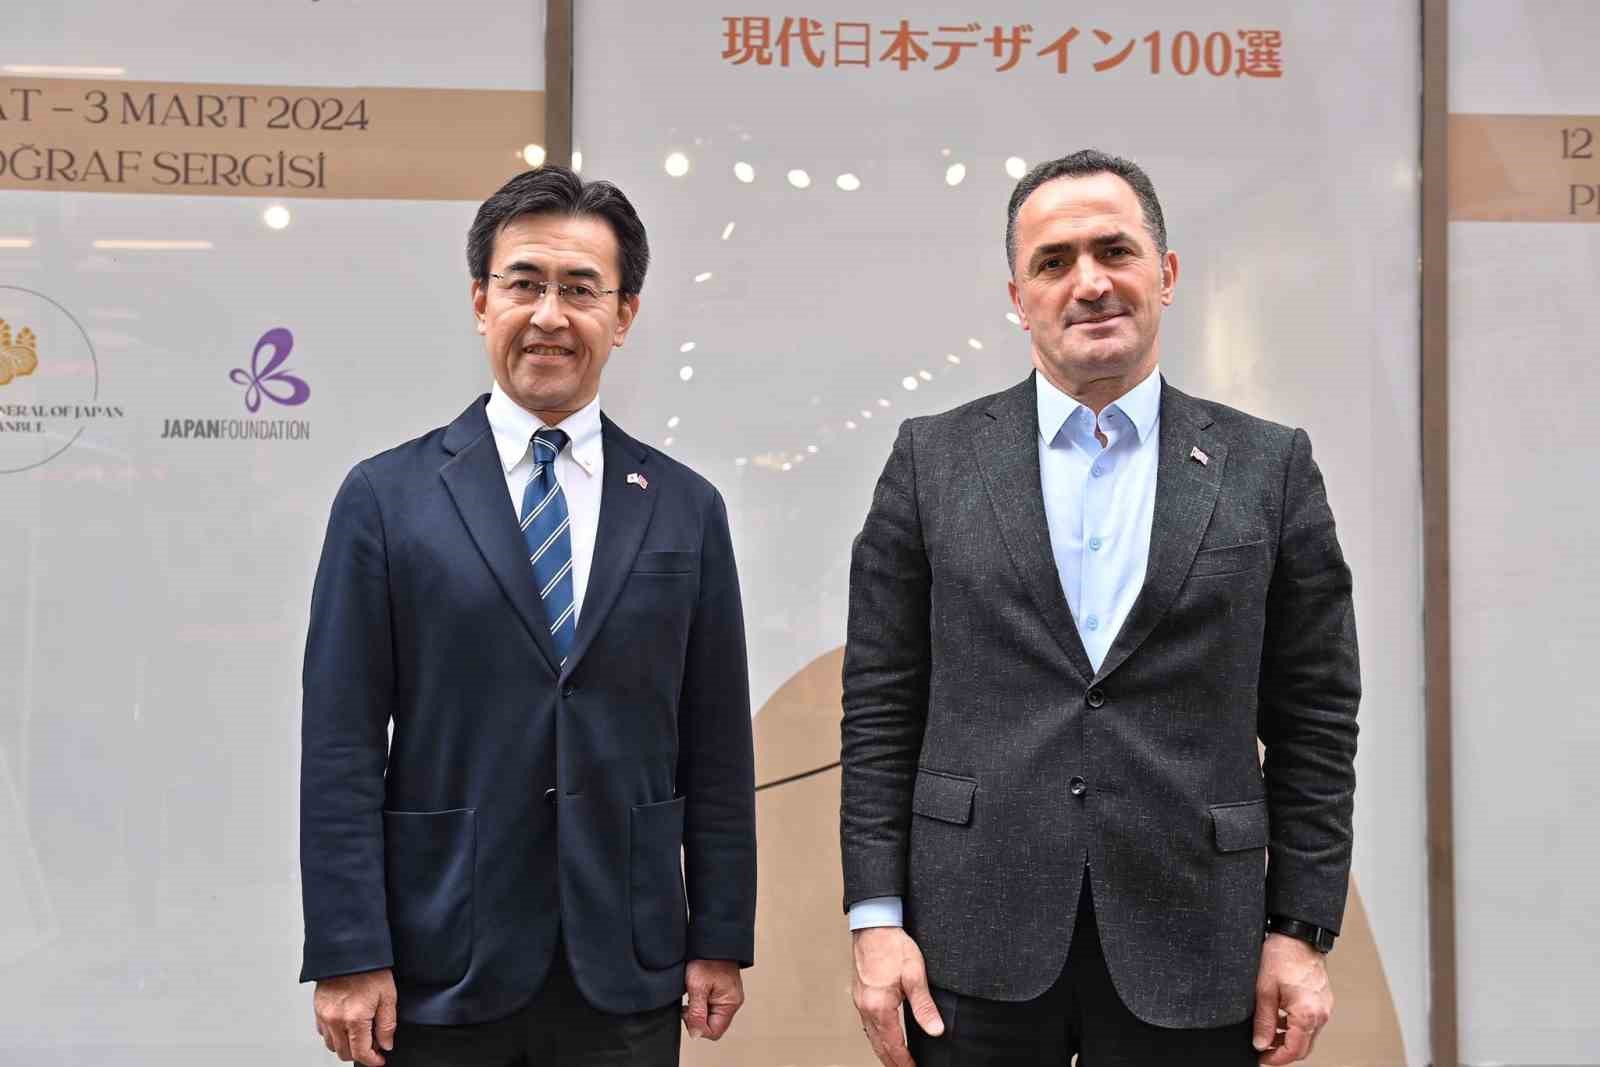 Japonya Başkonsolosu Kenichi: “İki ülkenin ilişkisi derin ve samimi”